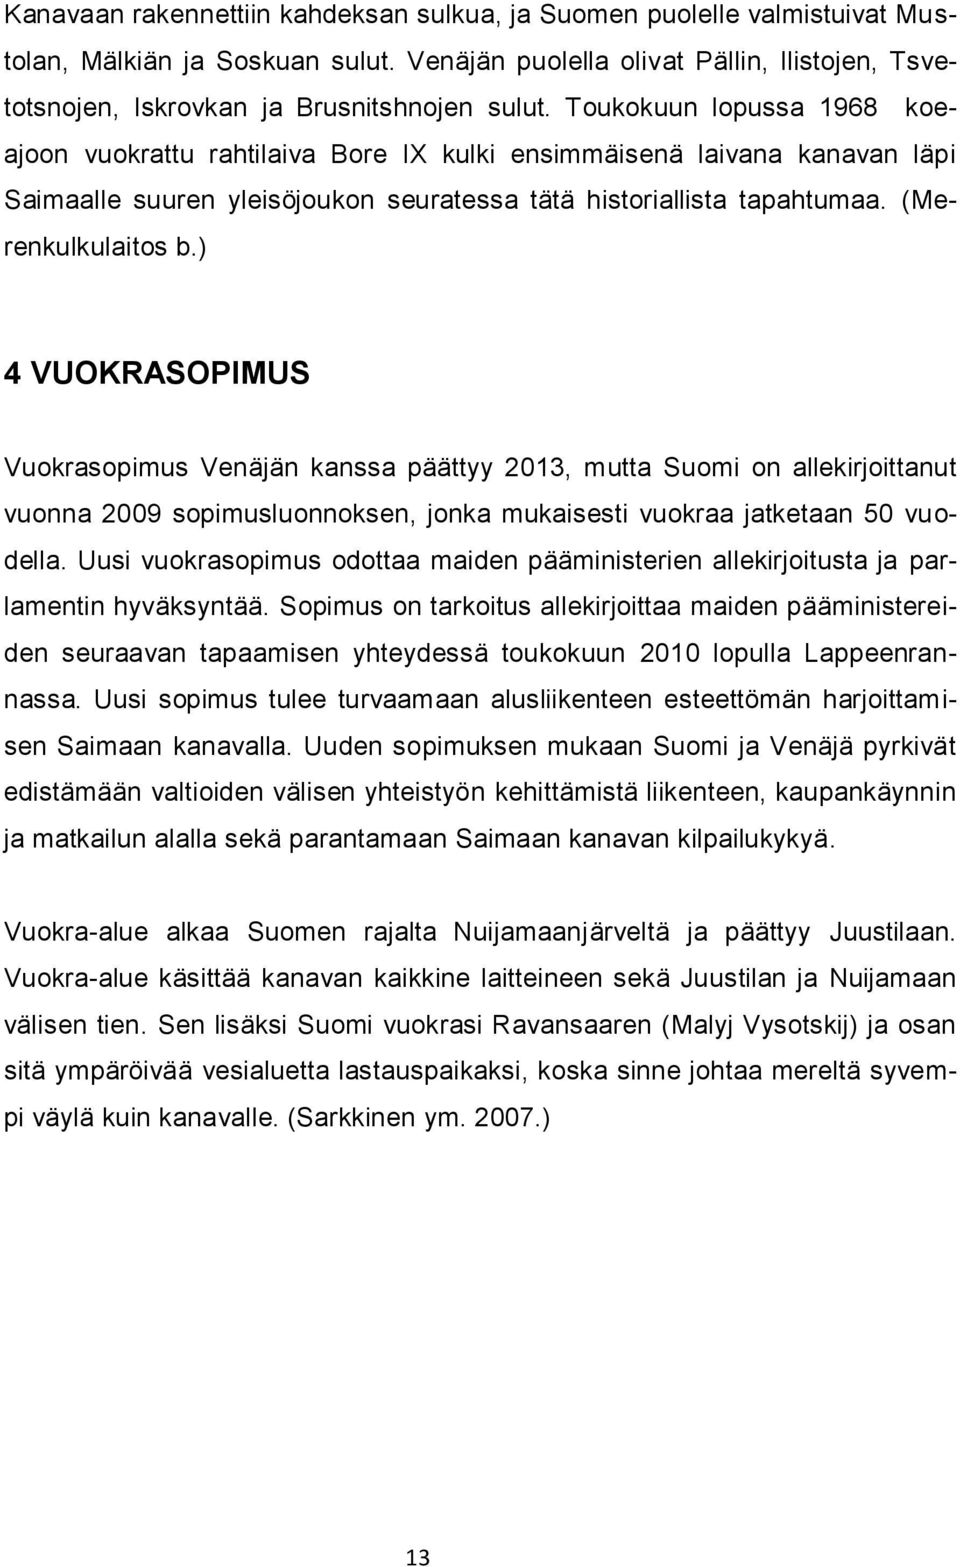 ) 4 VUOKRASOPIMUS Vuokrasopimus Venäjän kanssa päättyy 2013, mutta Suomi on allekirjoittanut vuonna 2009 sopimusluonnoksen, jonka mukaisesti vuokraa jatketaan 50 vuodella.